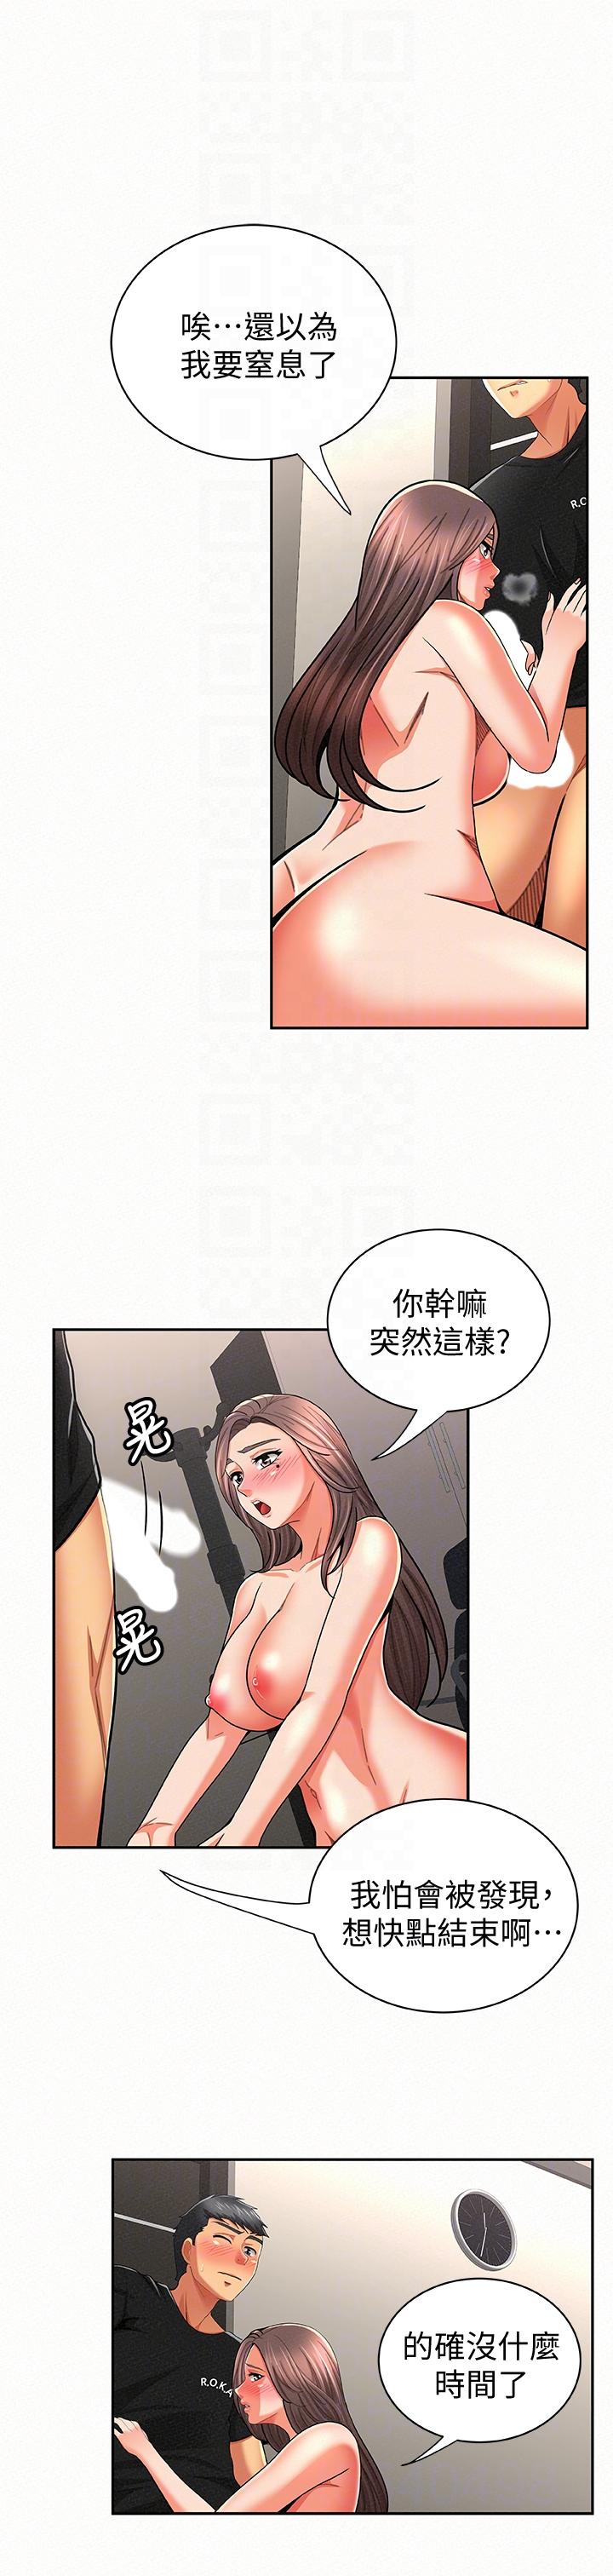 韩国污漫画 報告夫人 第23话-夫人逐渐加深的怀疑 9